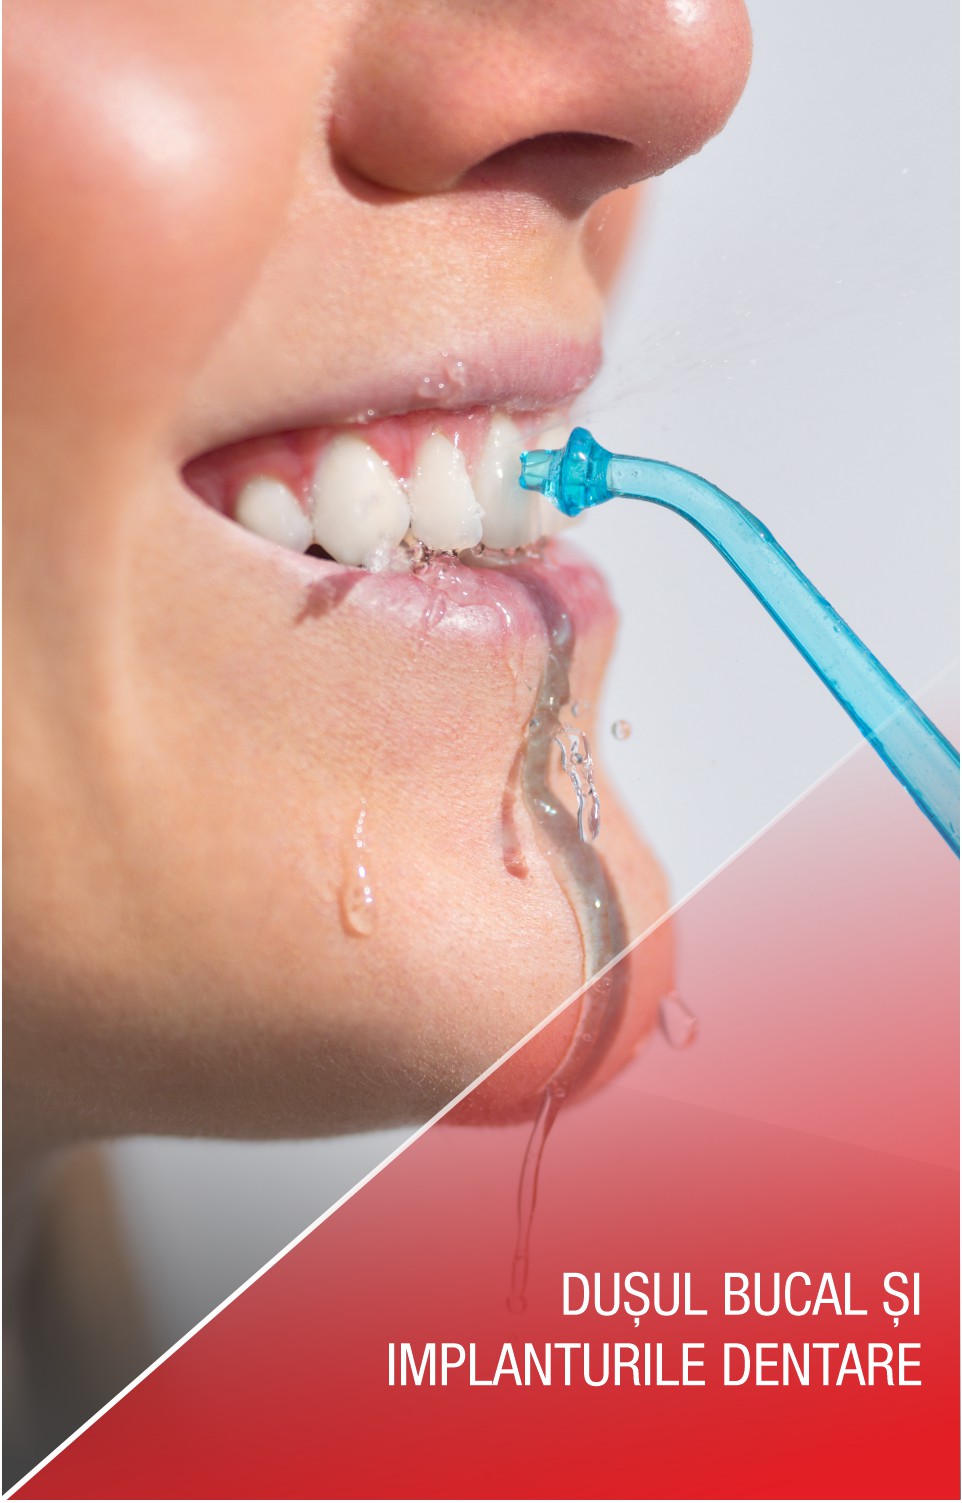 Dușul bucal: de ce este important atunci când ai implanturi dentare?